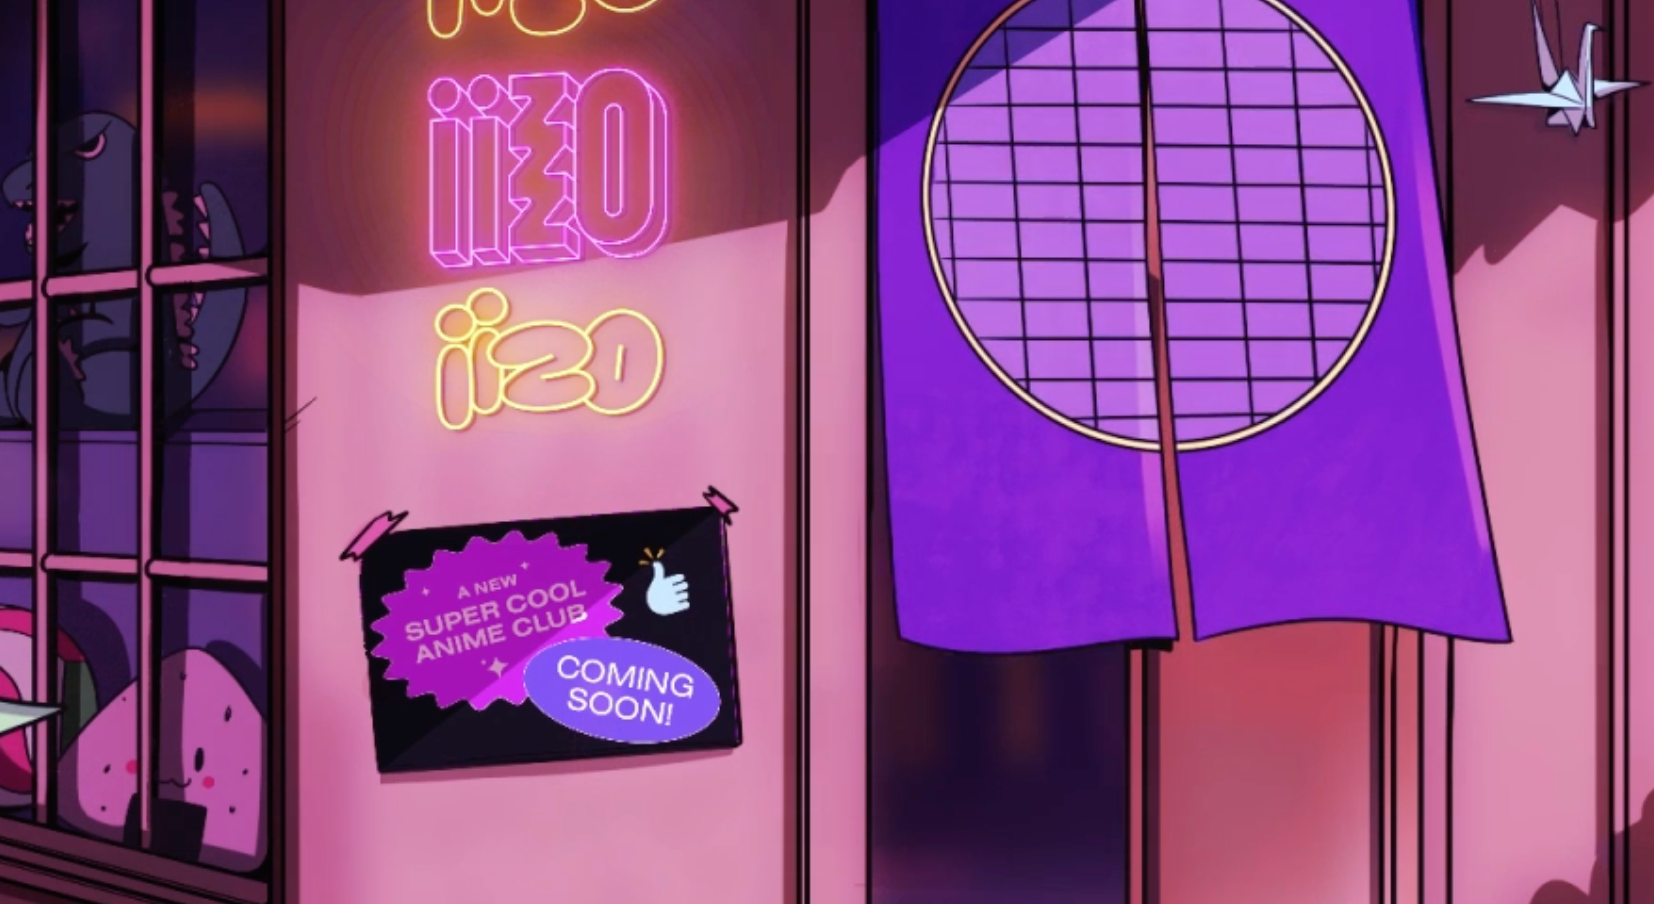 Распаковка iiZO, самого амбициозного магазина аниме, с исполнительным директором Toho Стейси Берт